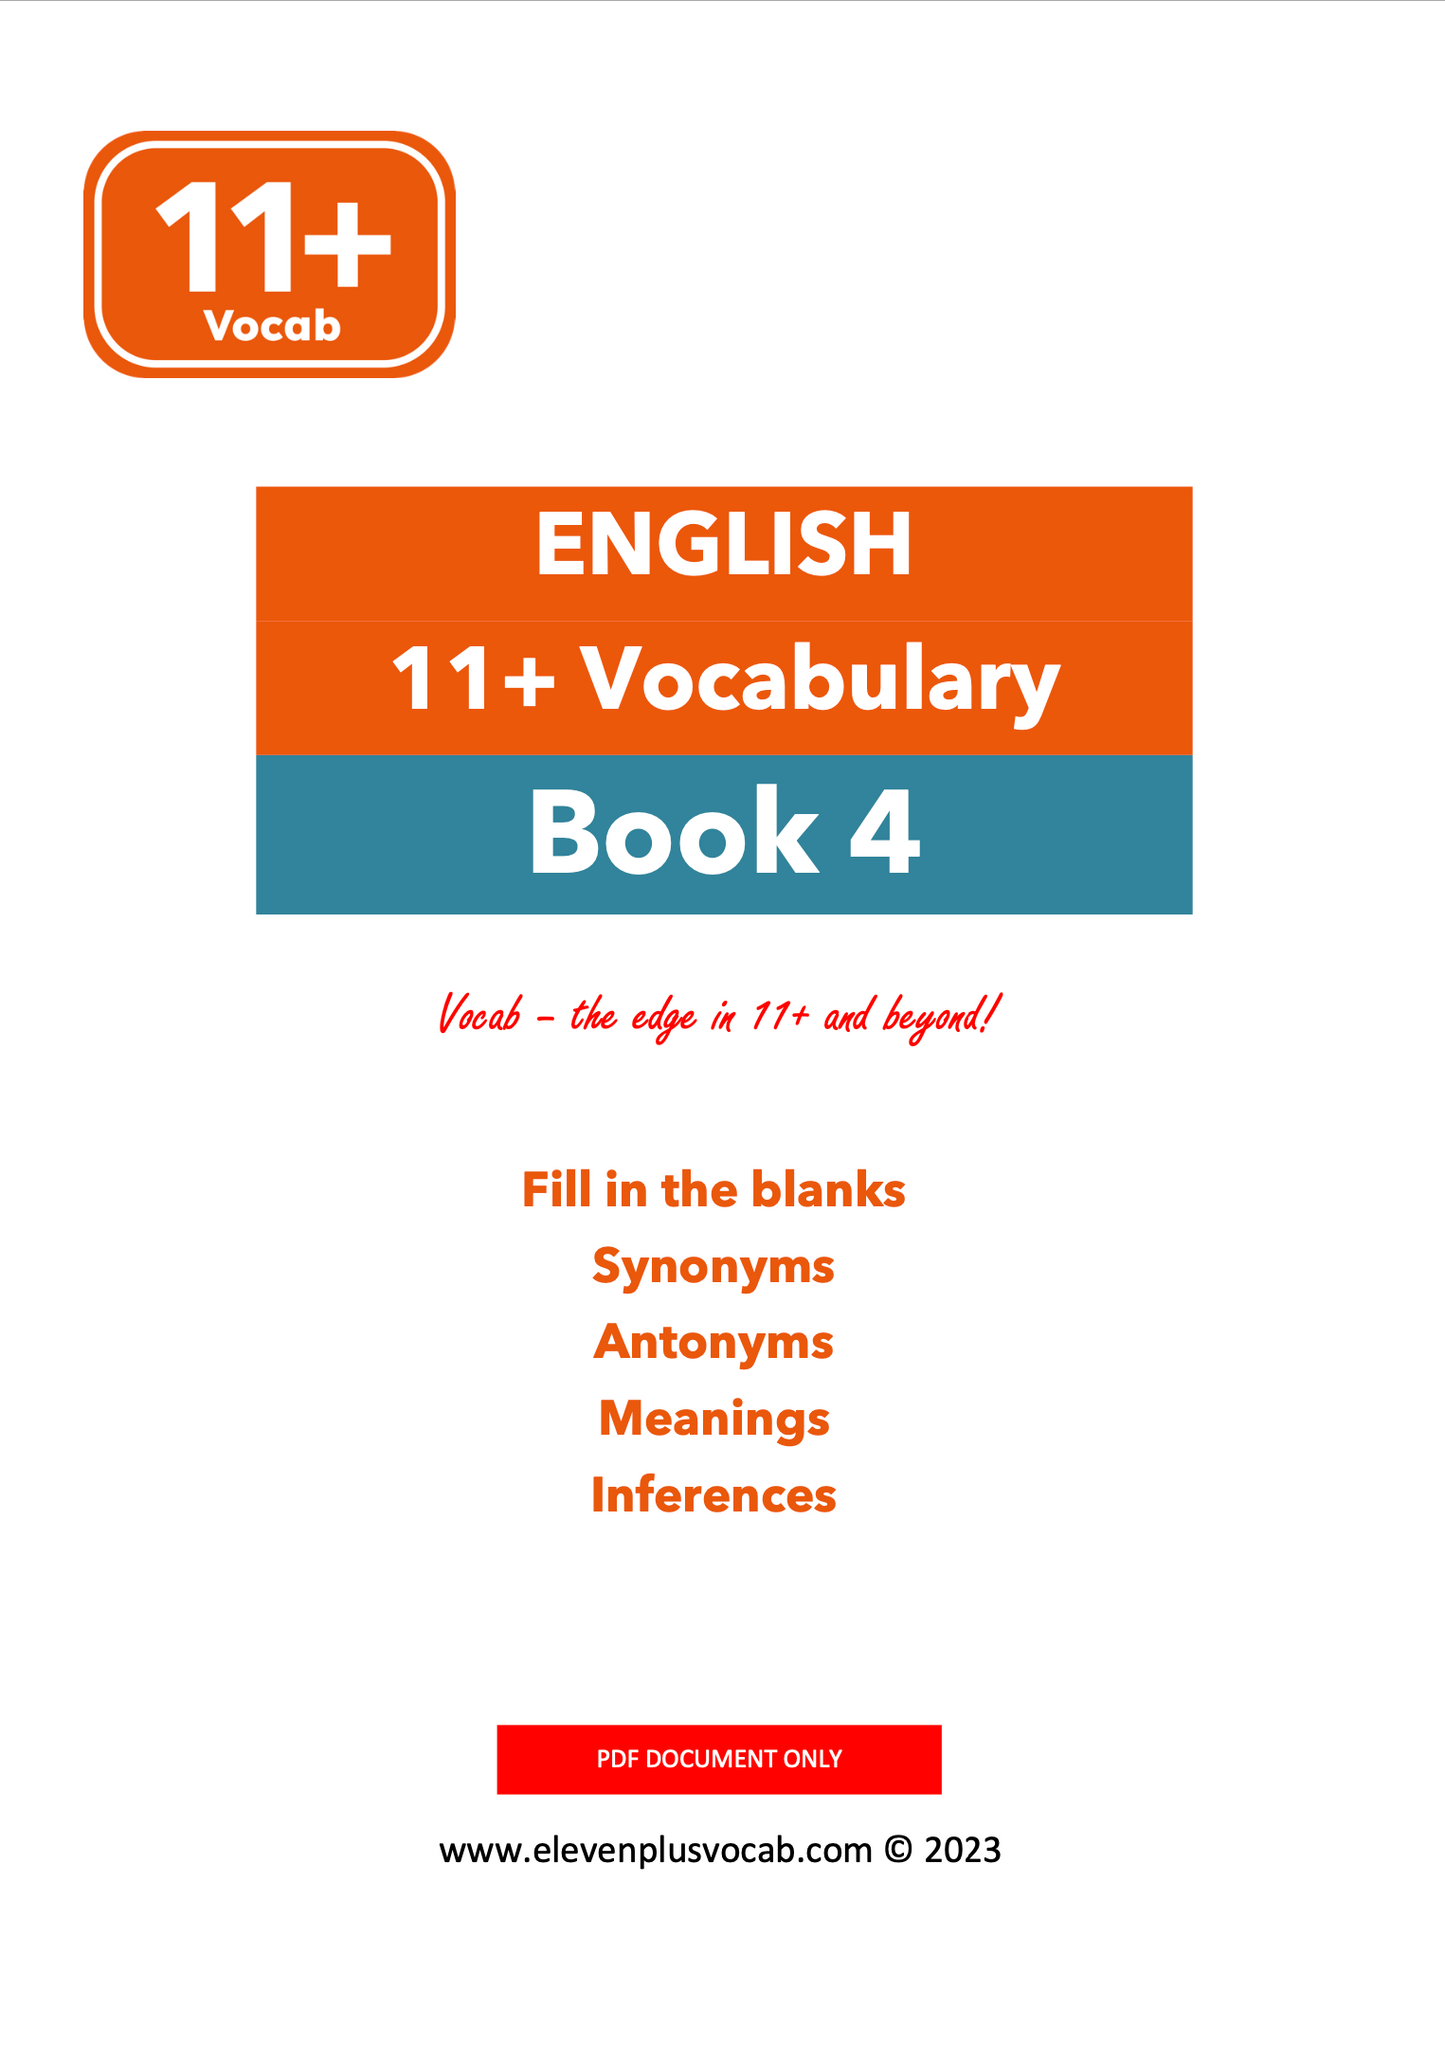 11+ English Vocab - PDF Book 4